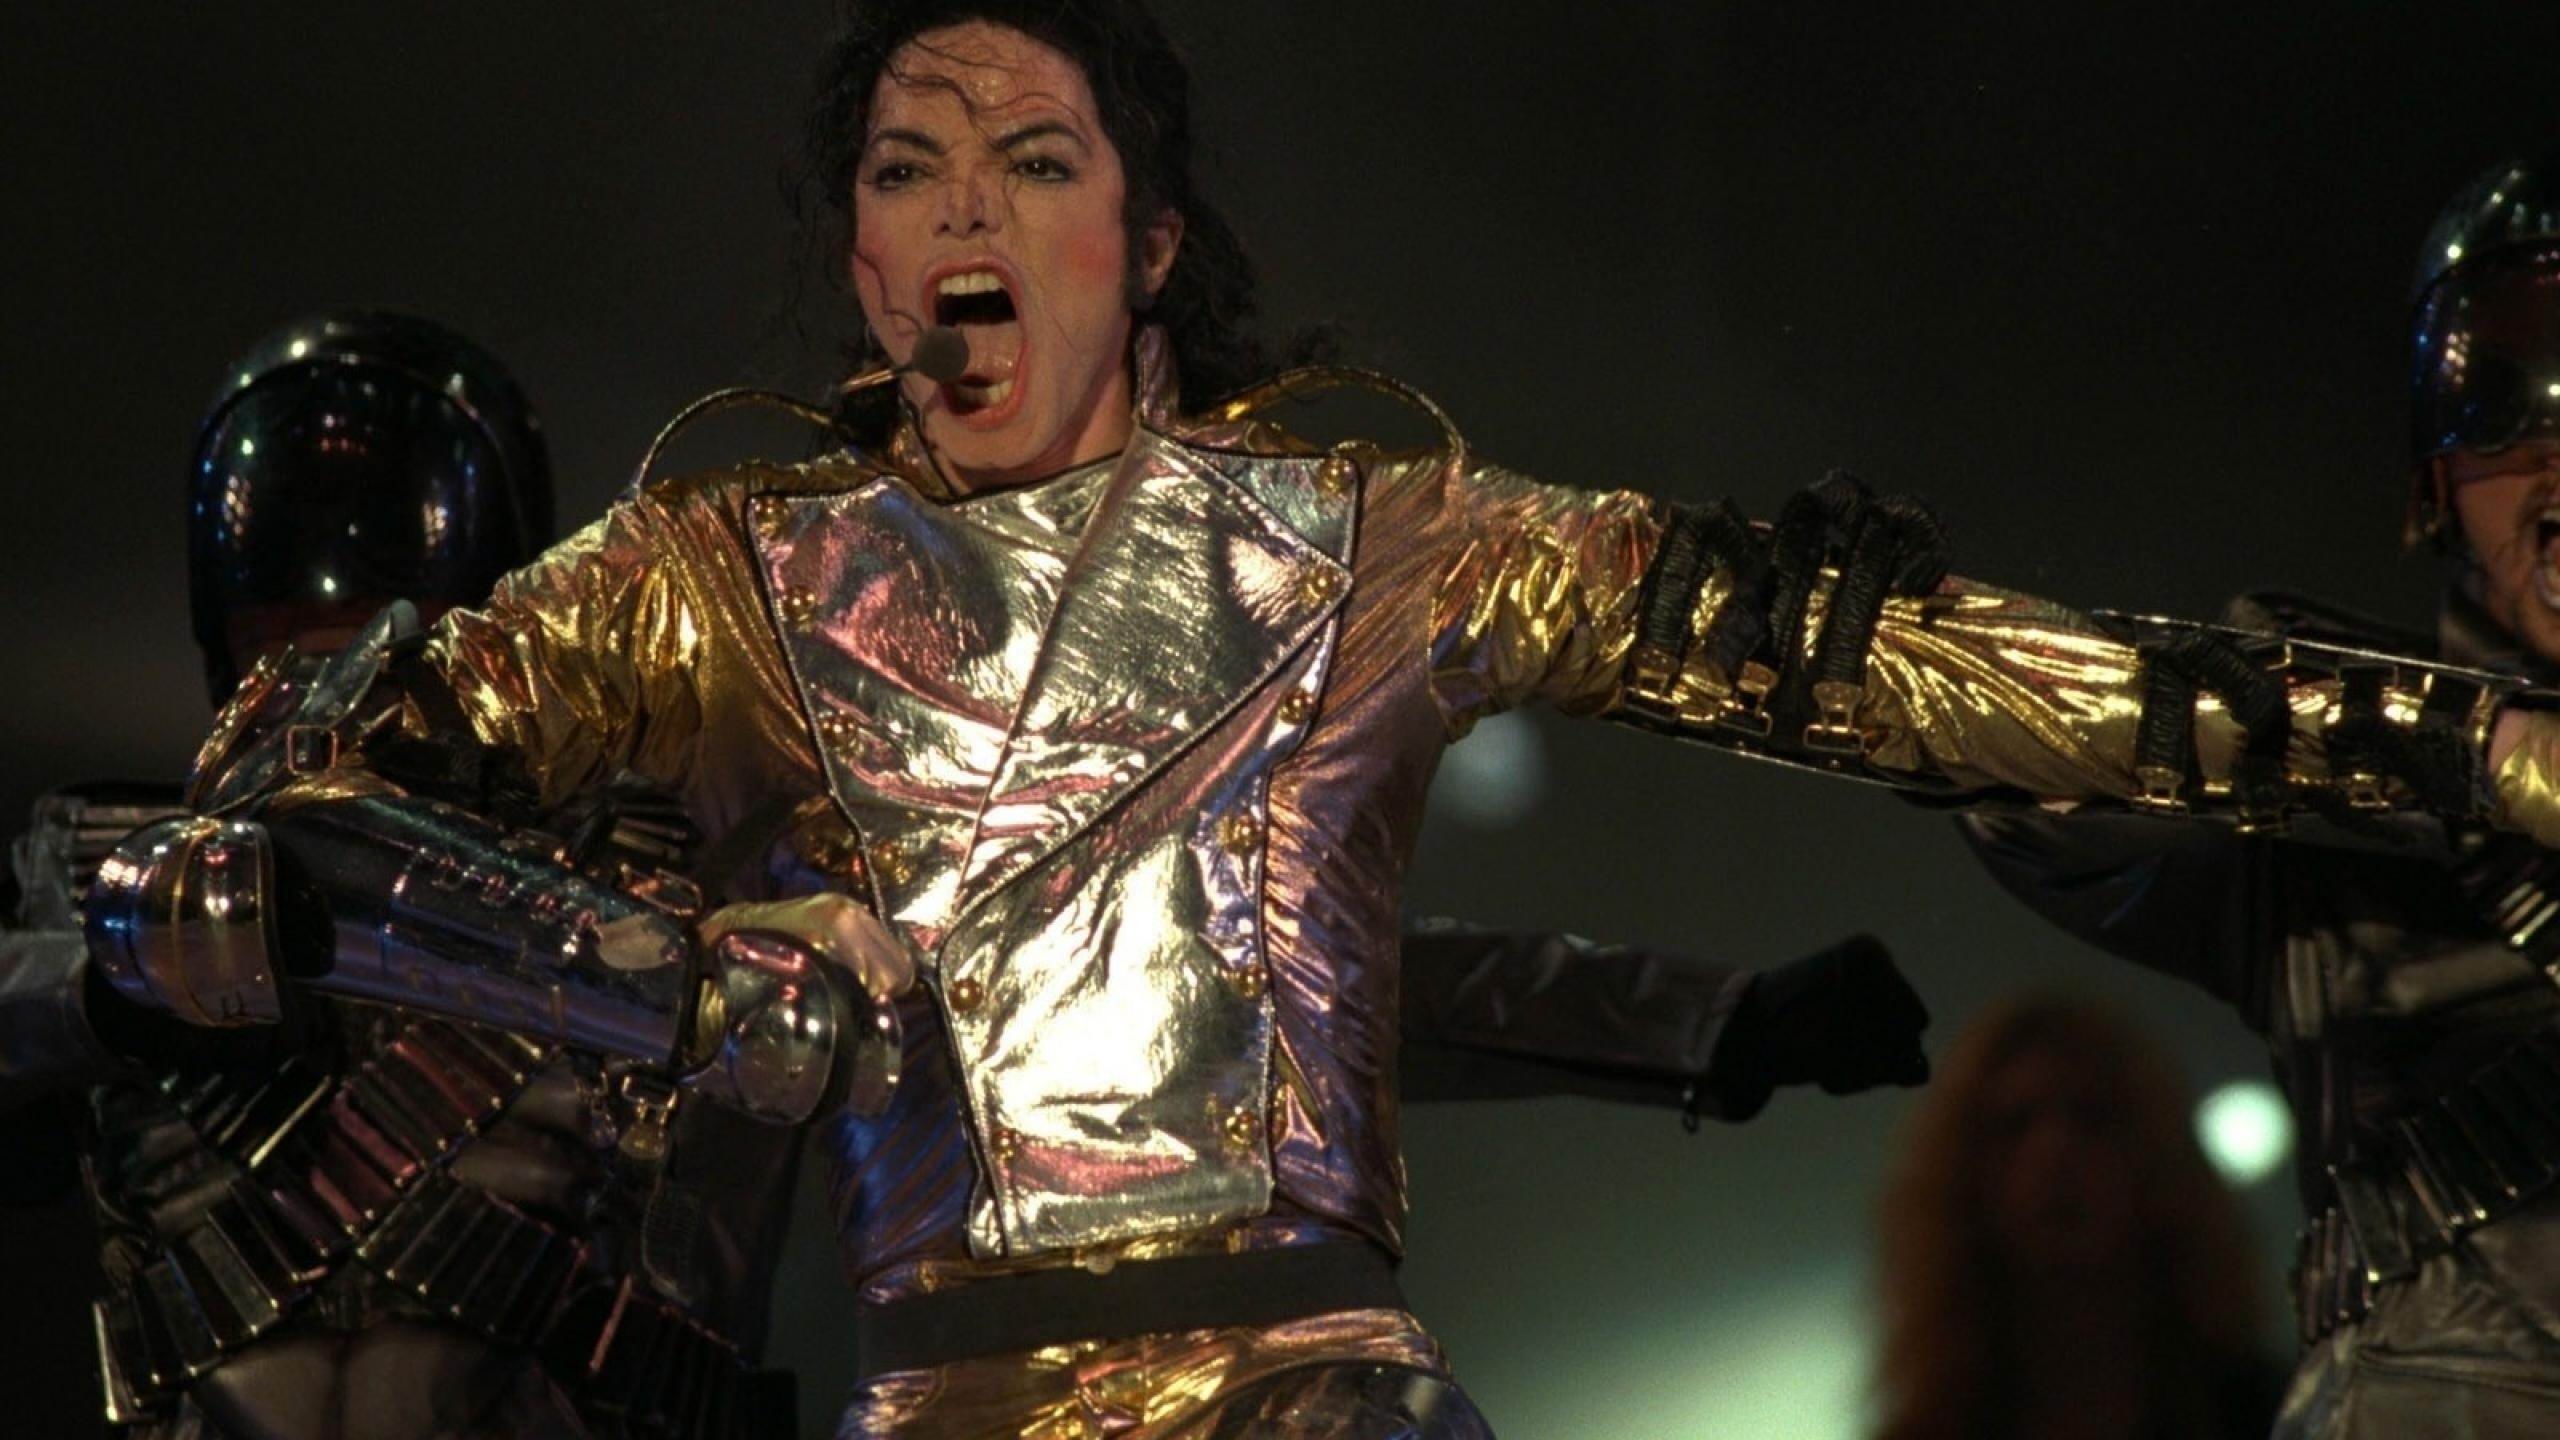 Michael Jackson Concert